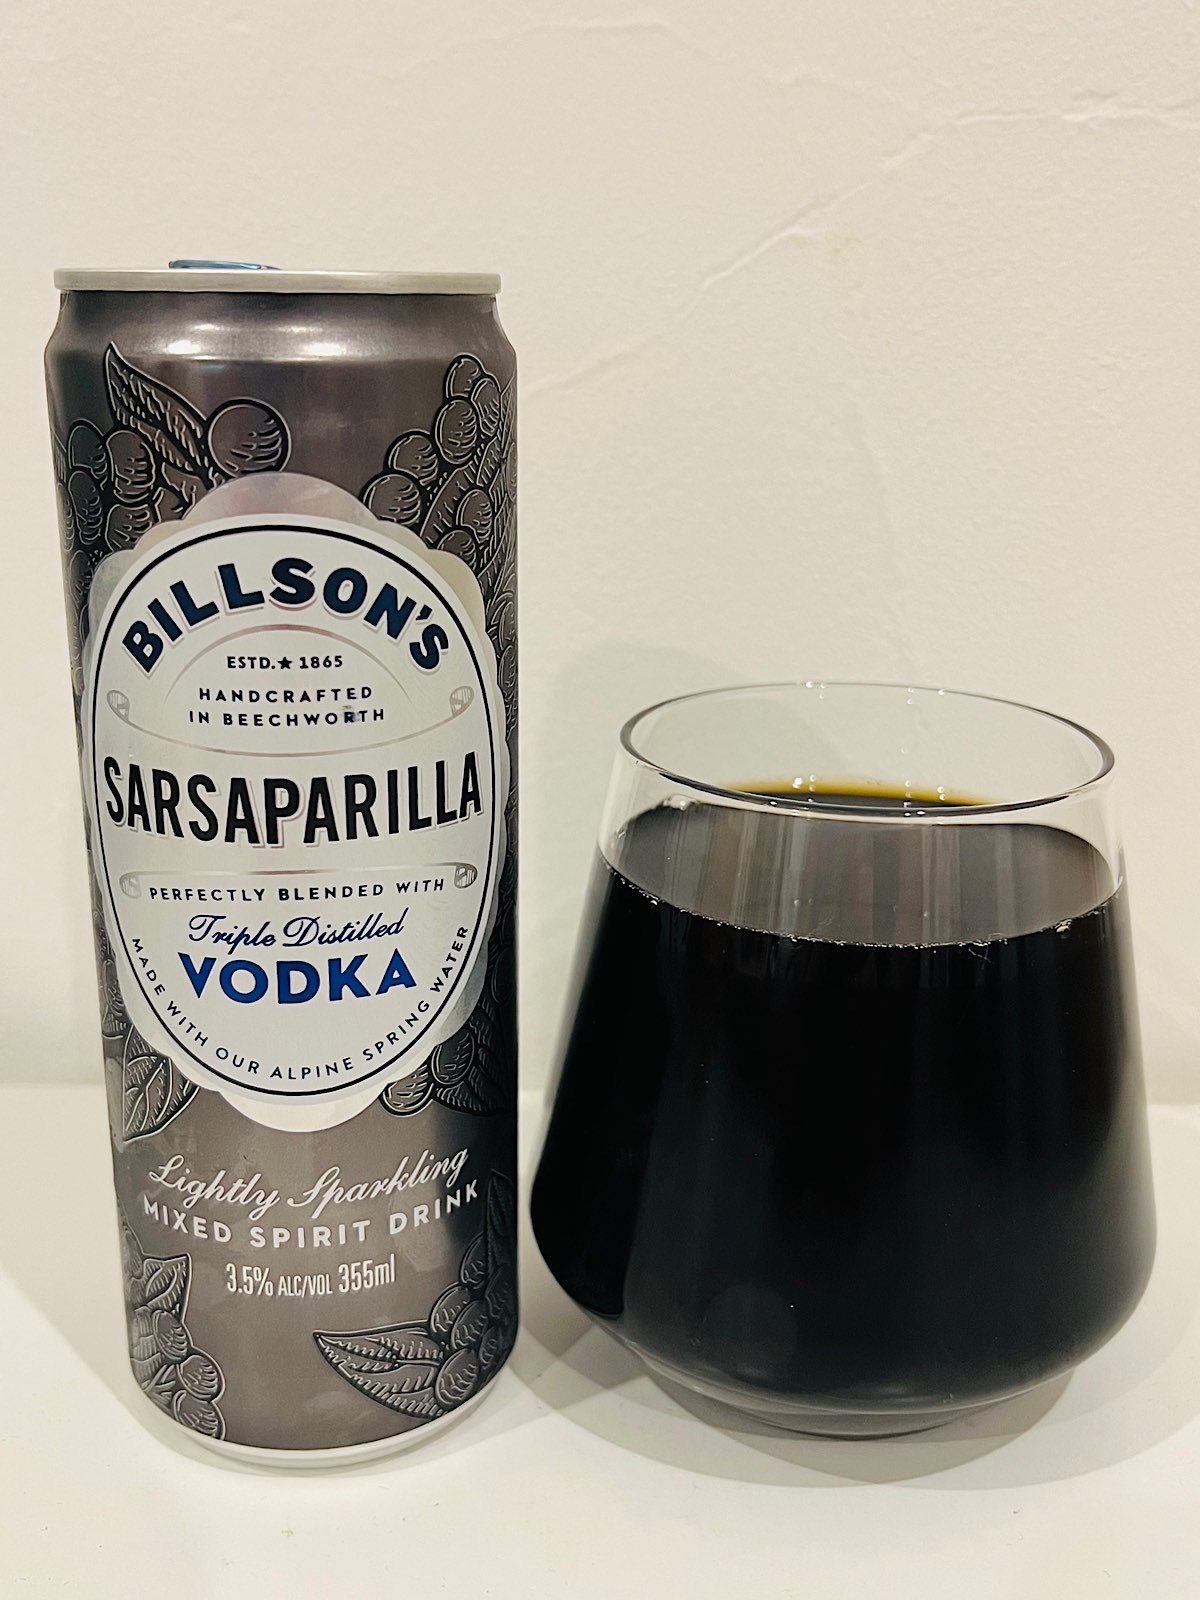 Billson's Vodka with Sarsaparilla